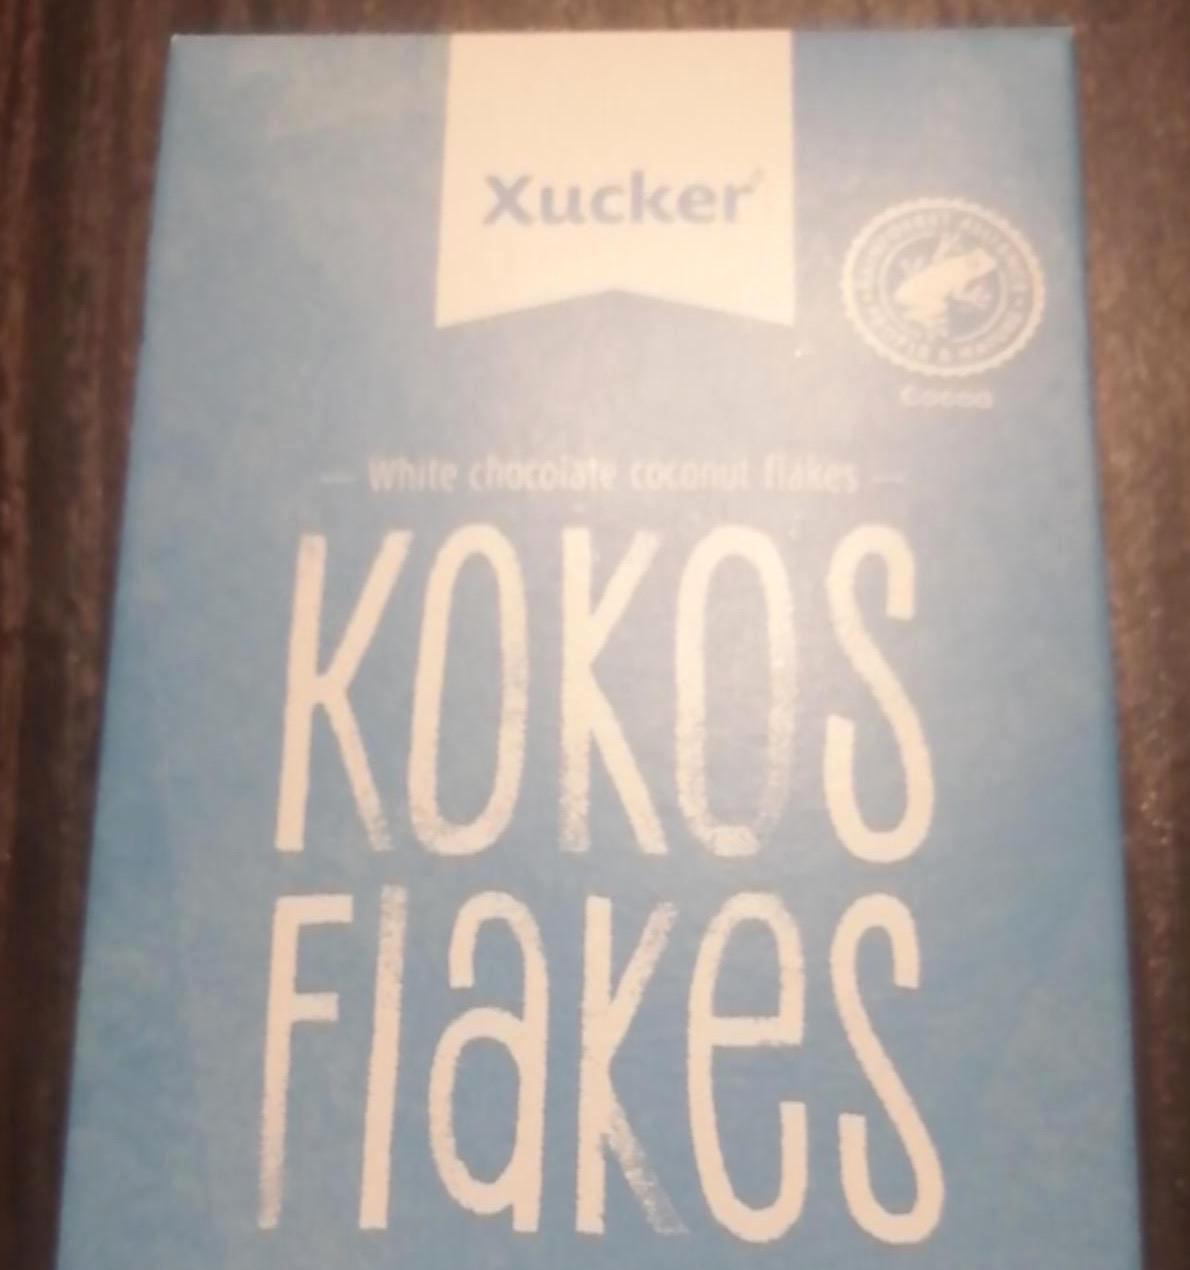 Képek - Kokos flakes Xucker